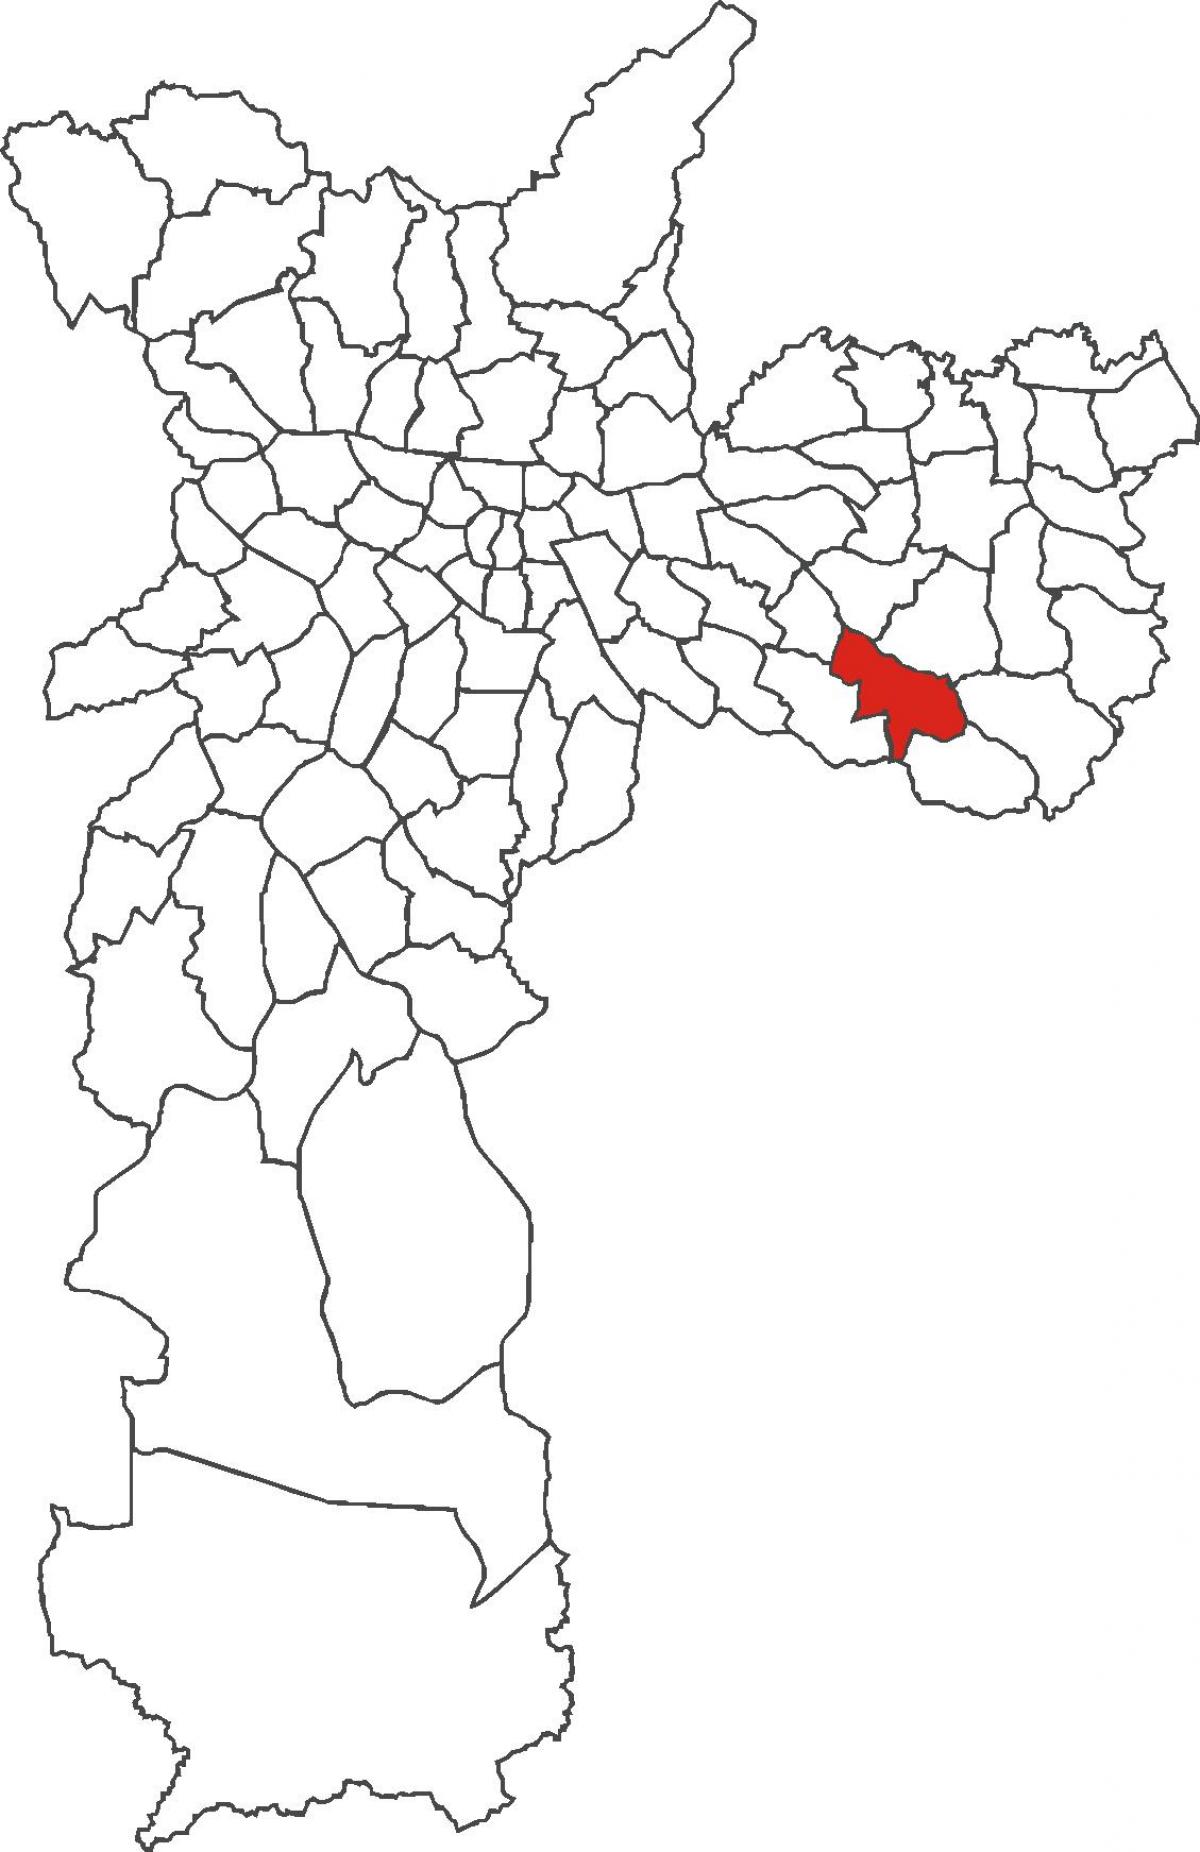 মানচিত্র São Mateus জেলা